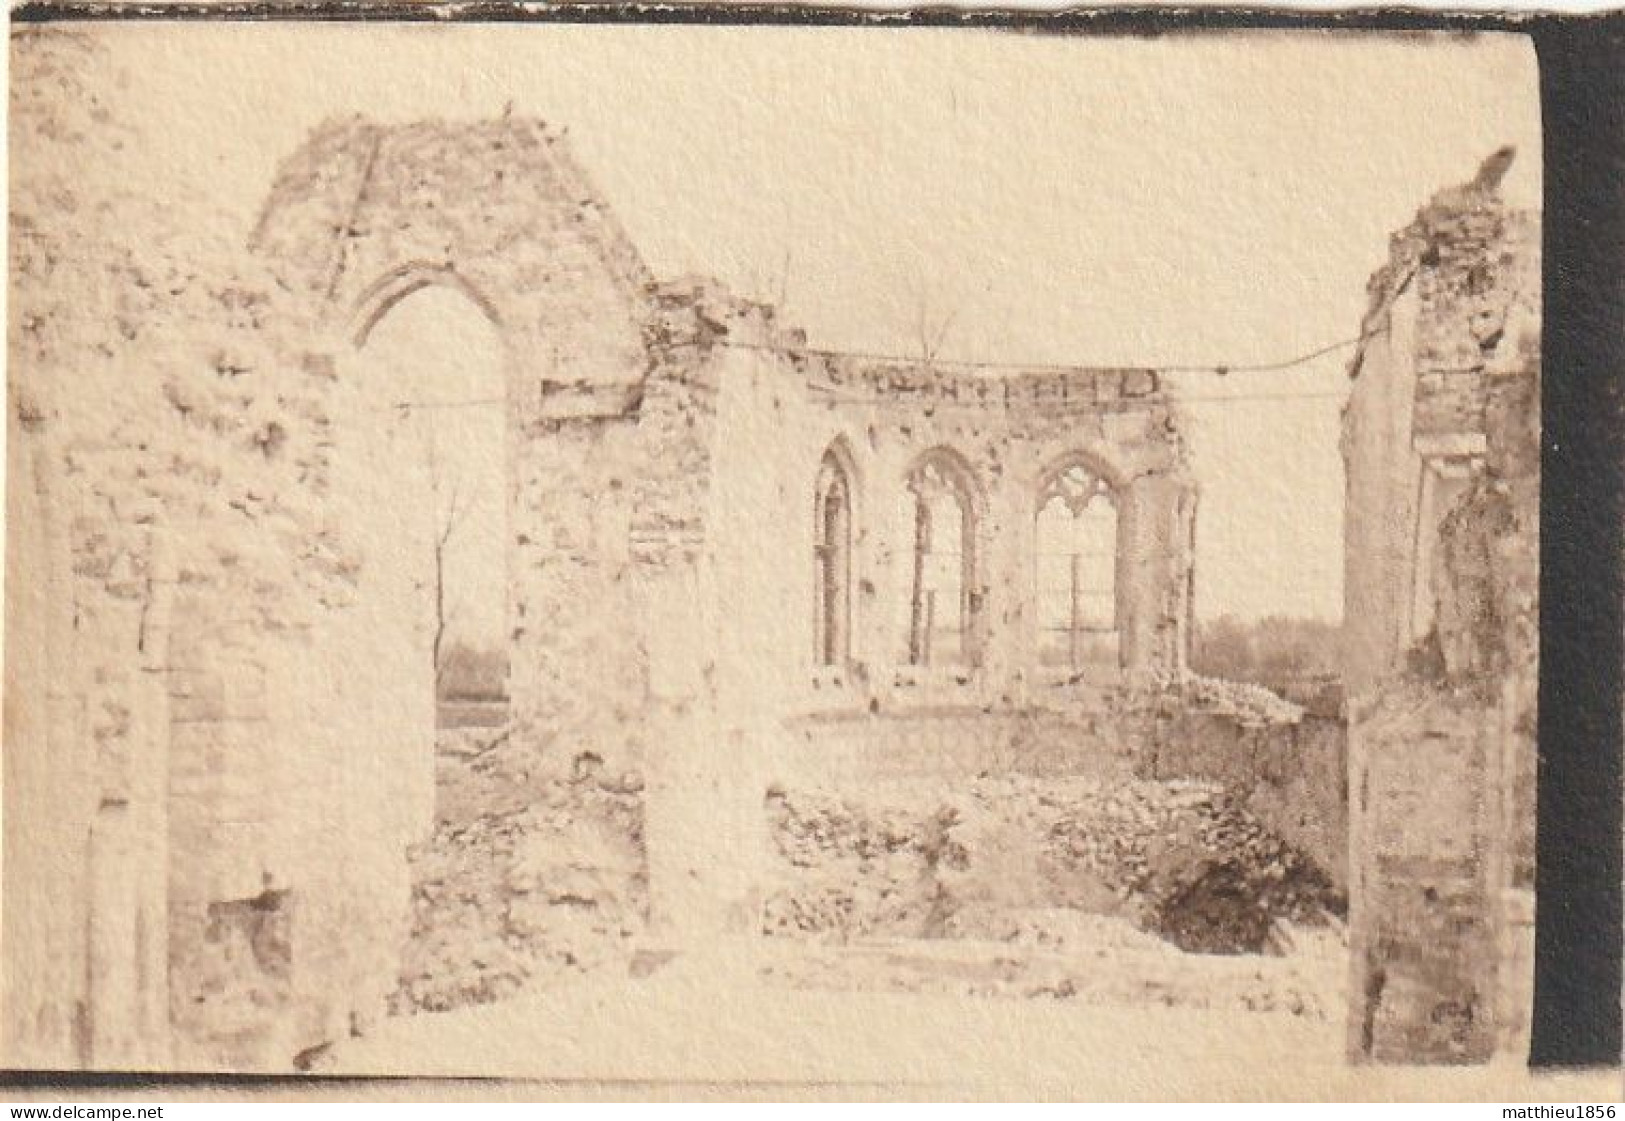 Photo 1916 NIEUCAPELLE (Nieuwkapelle, Diksmuide) - Les Ruines De L'église (A252, Ww1, Wk 1) - Diksmuide